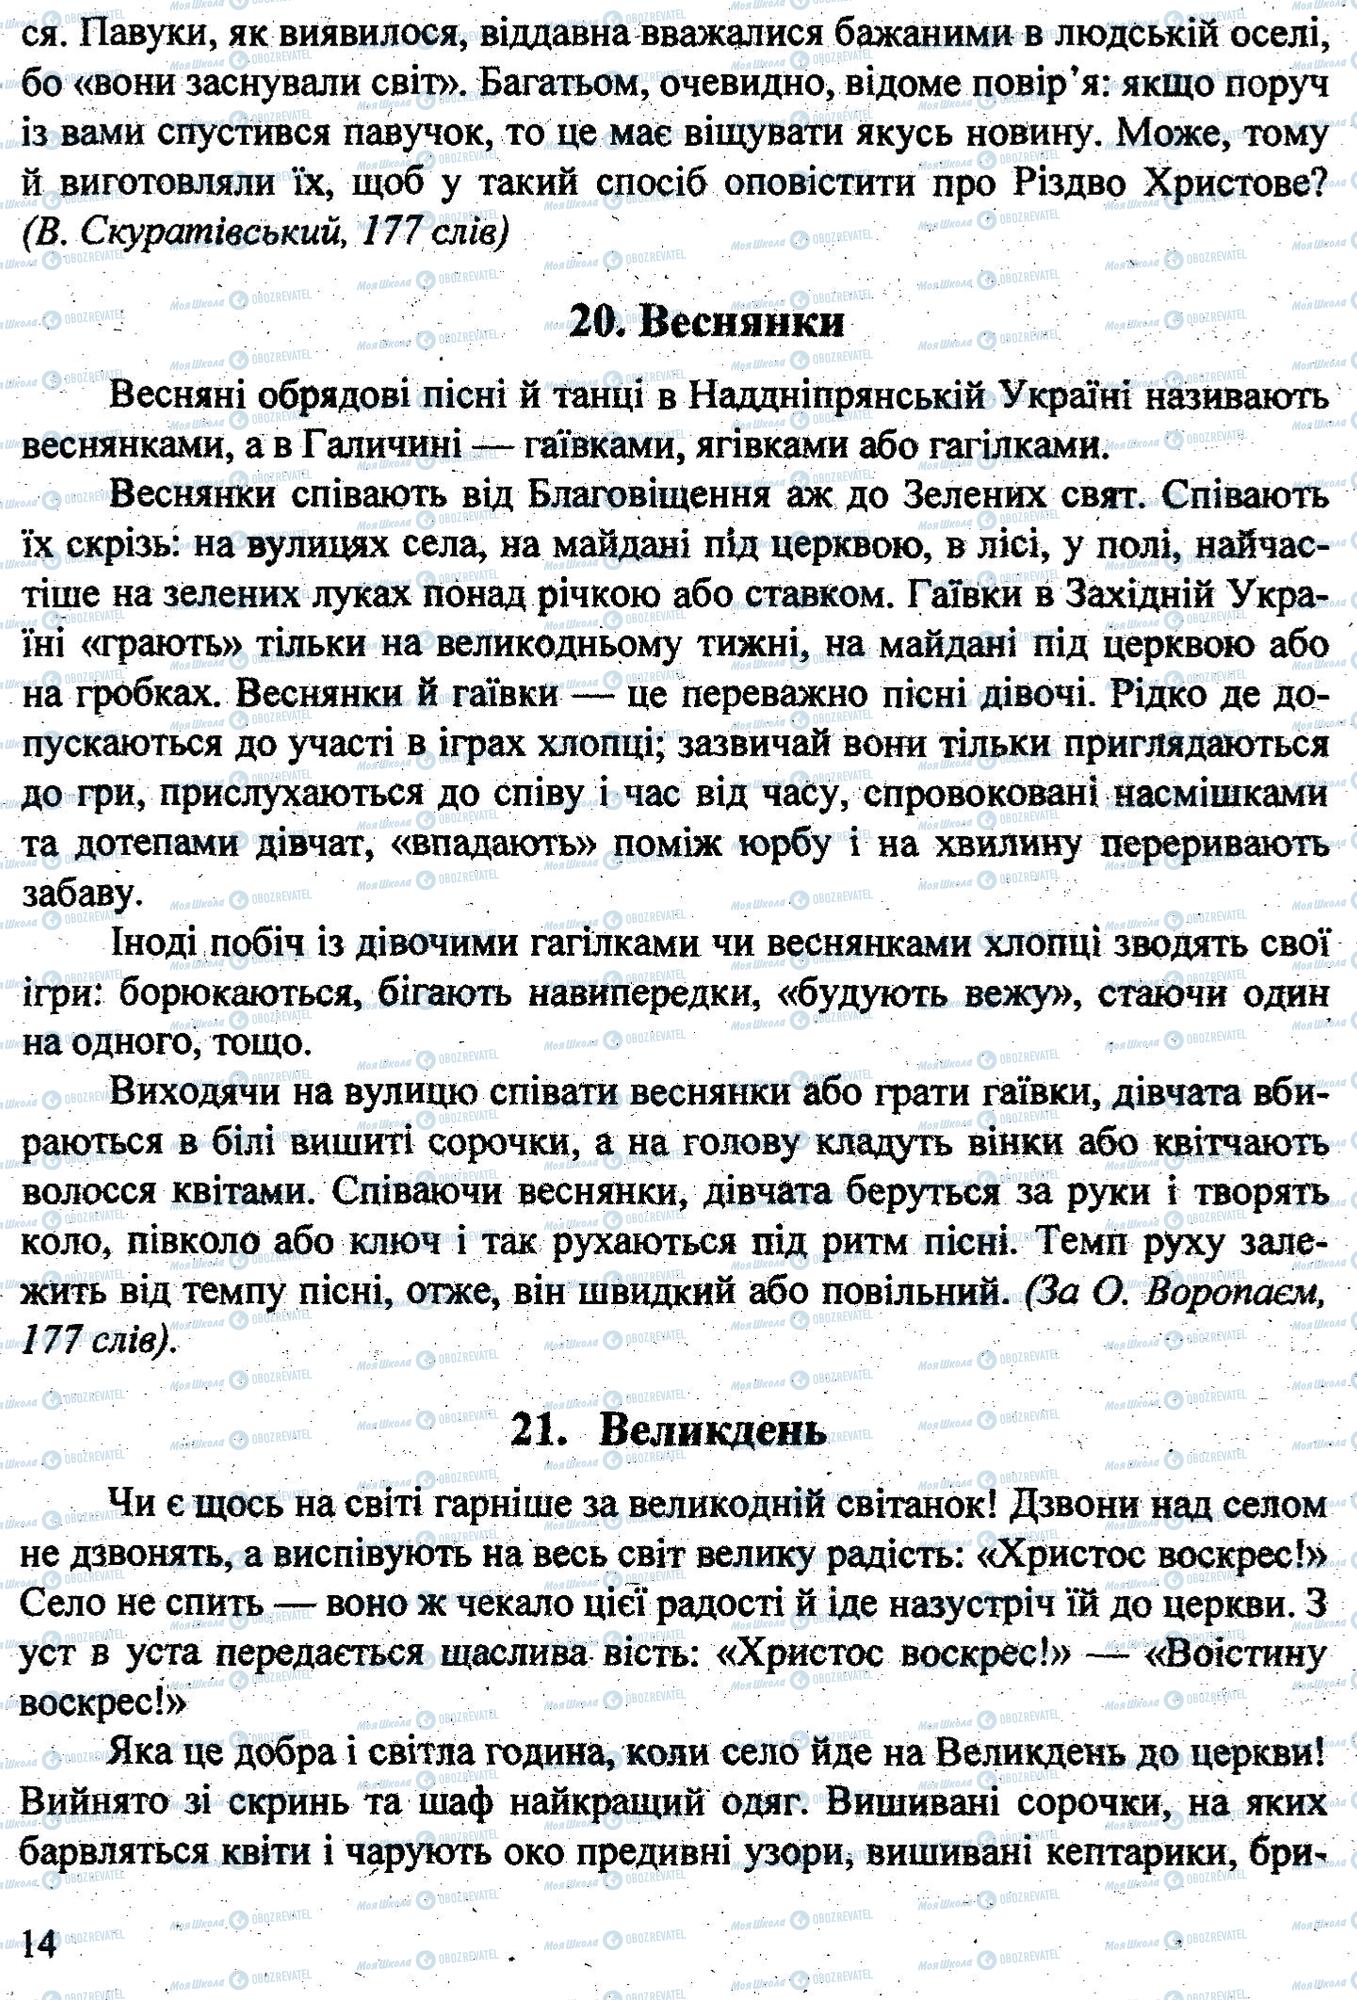 ДПА Укр мова 9 класс страница 0013